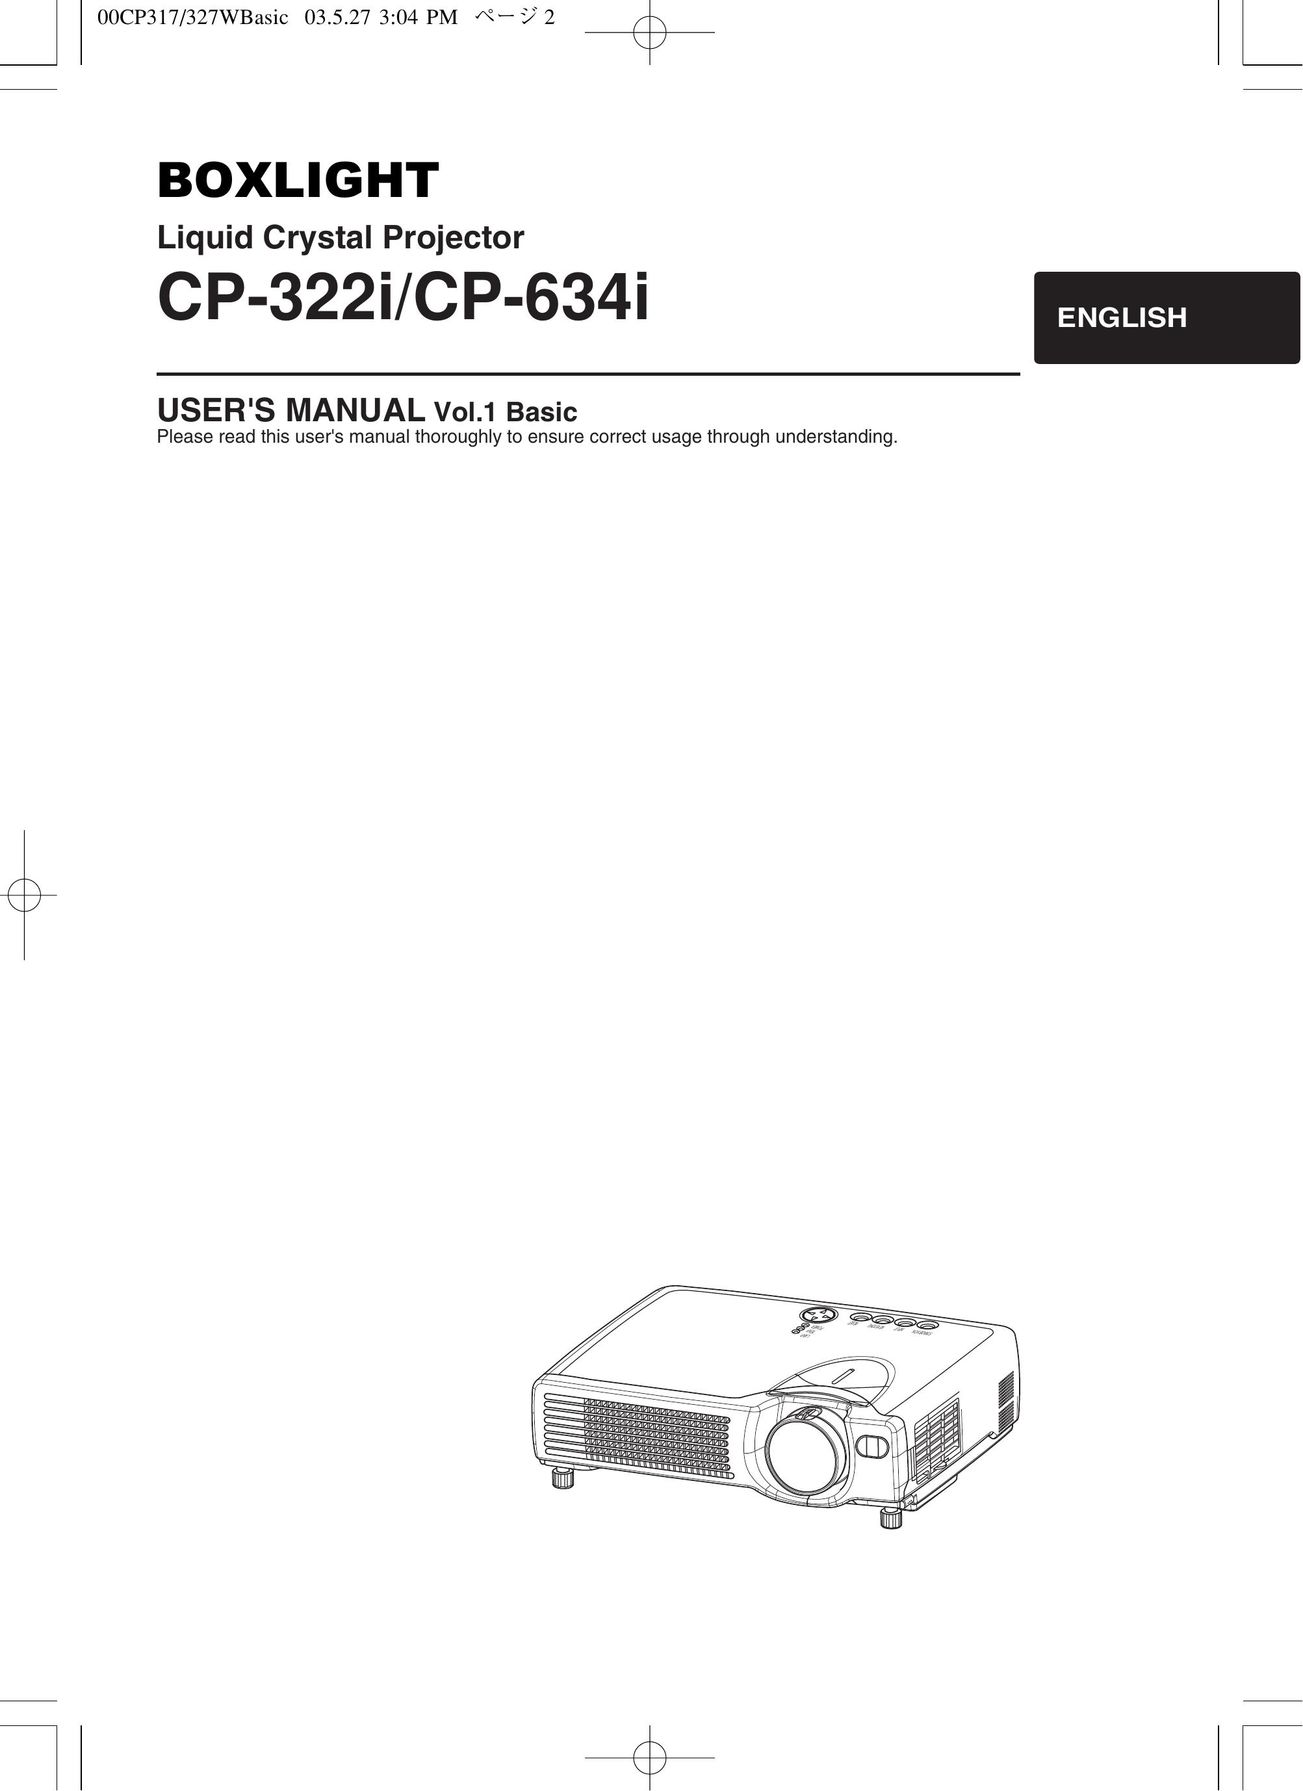 BOXLIGHT CP-322i/CP-634i Projector User Manual